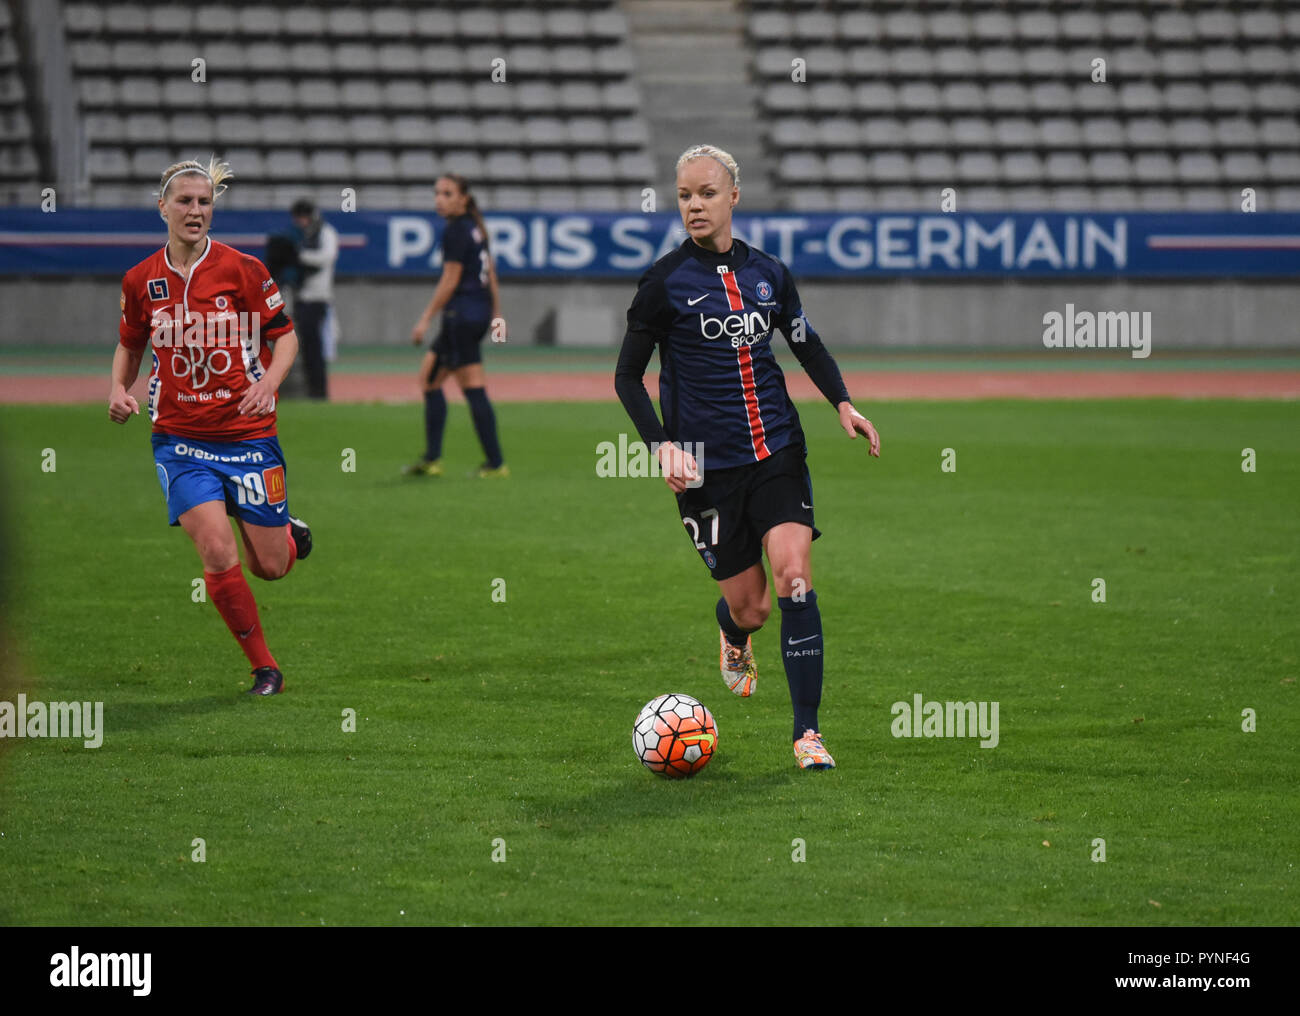 Novembre 18, 2015 - Paris, France : PSG player Caroline Seger (R) pendant le match de foot entre Arras et la PSG. Match de foot entre l'équipe féminine du PSG et le club suedois d'Orebro, quelques jours après les attentats du 13 novembre 2015. *** FRANCE / PAS DE VENTES DE MÉDIAS FRANÇAIS *** Banque D'Images